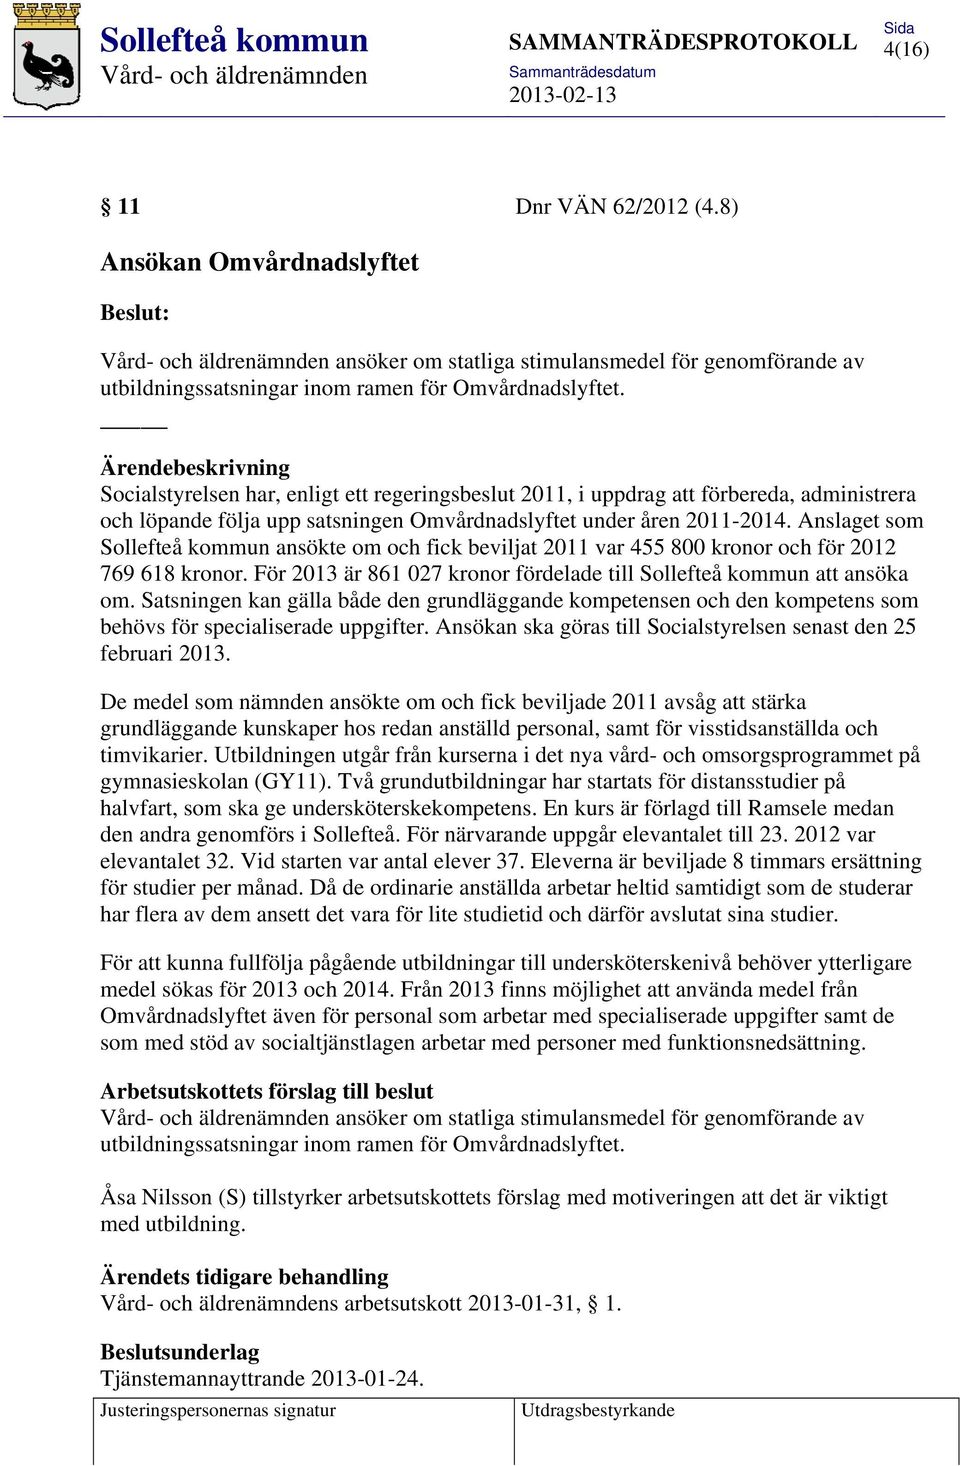 Anslaget som Sollefteå kommun ansökte om och fick beviljat 2011 var 455 800 kronor och för 2012 769 618 kronor. För 2013 är 861 027 kronor fördelade till Sollefteå kommun att ansöka om.